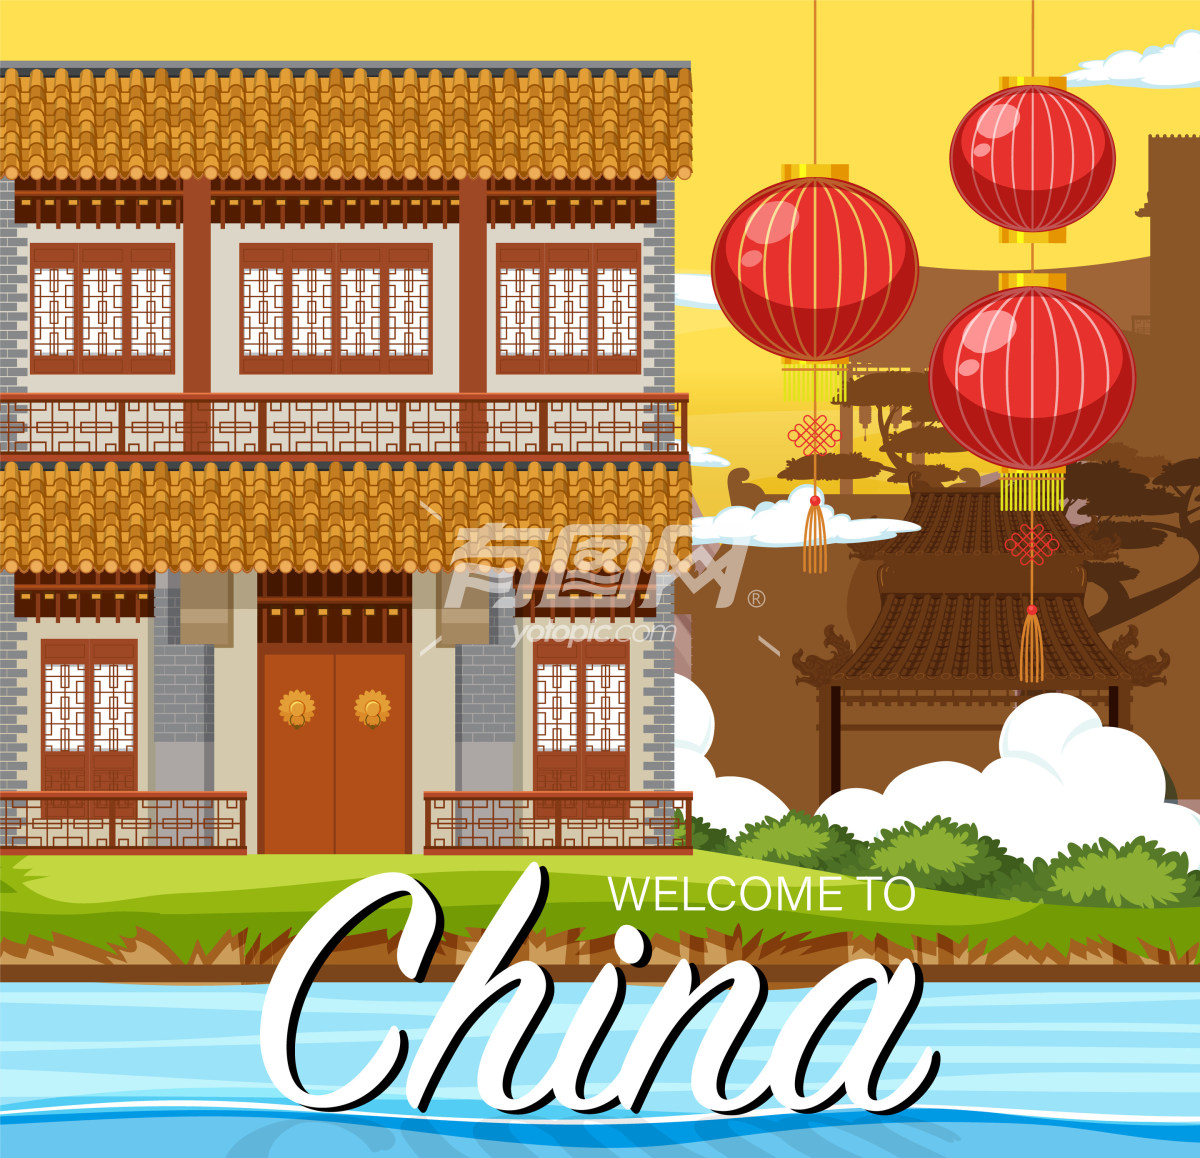 中国传统文化元素的插画